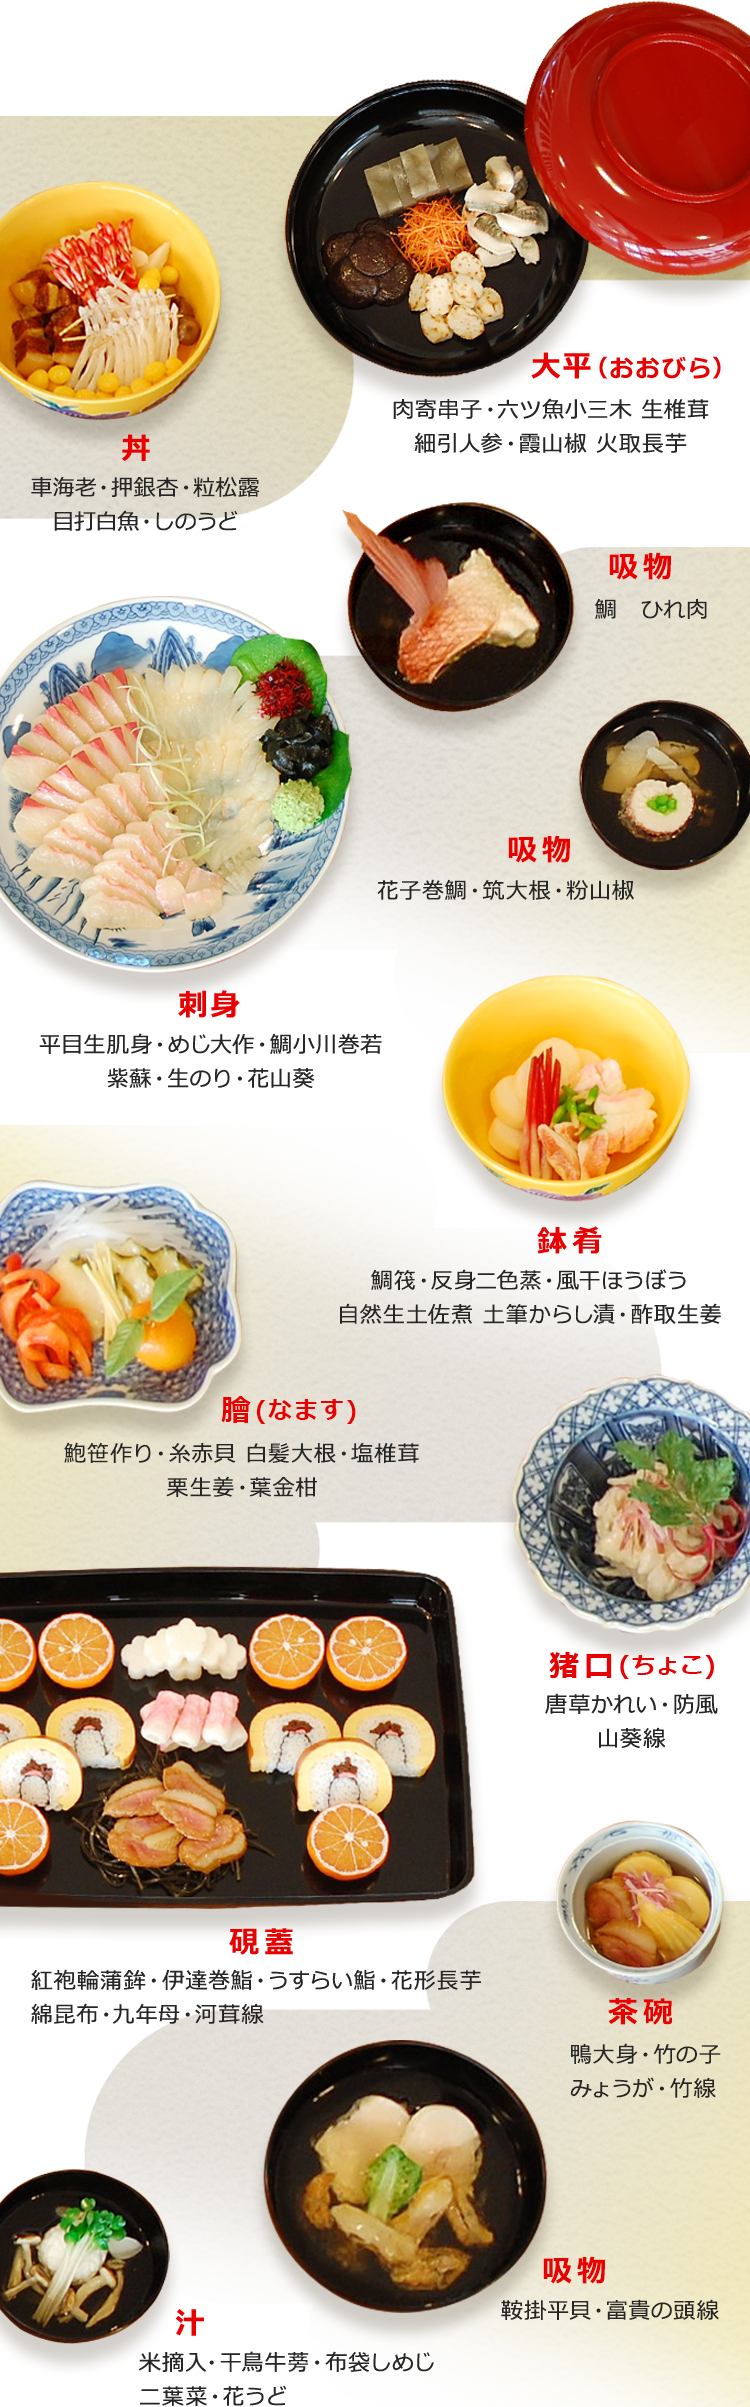 洋食のルーツ 西洋料理の事始め 洋食ルーツストーリー Plenus 米食文化研究所